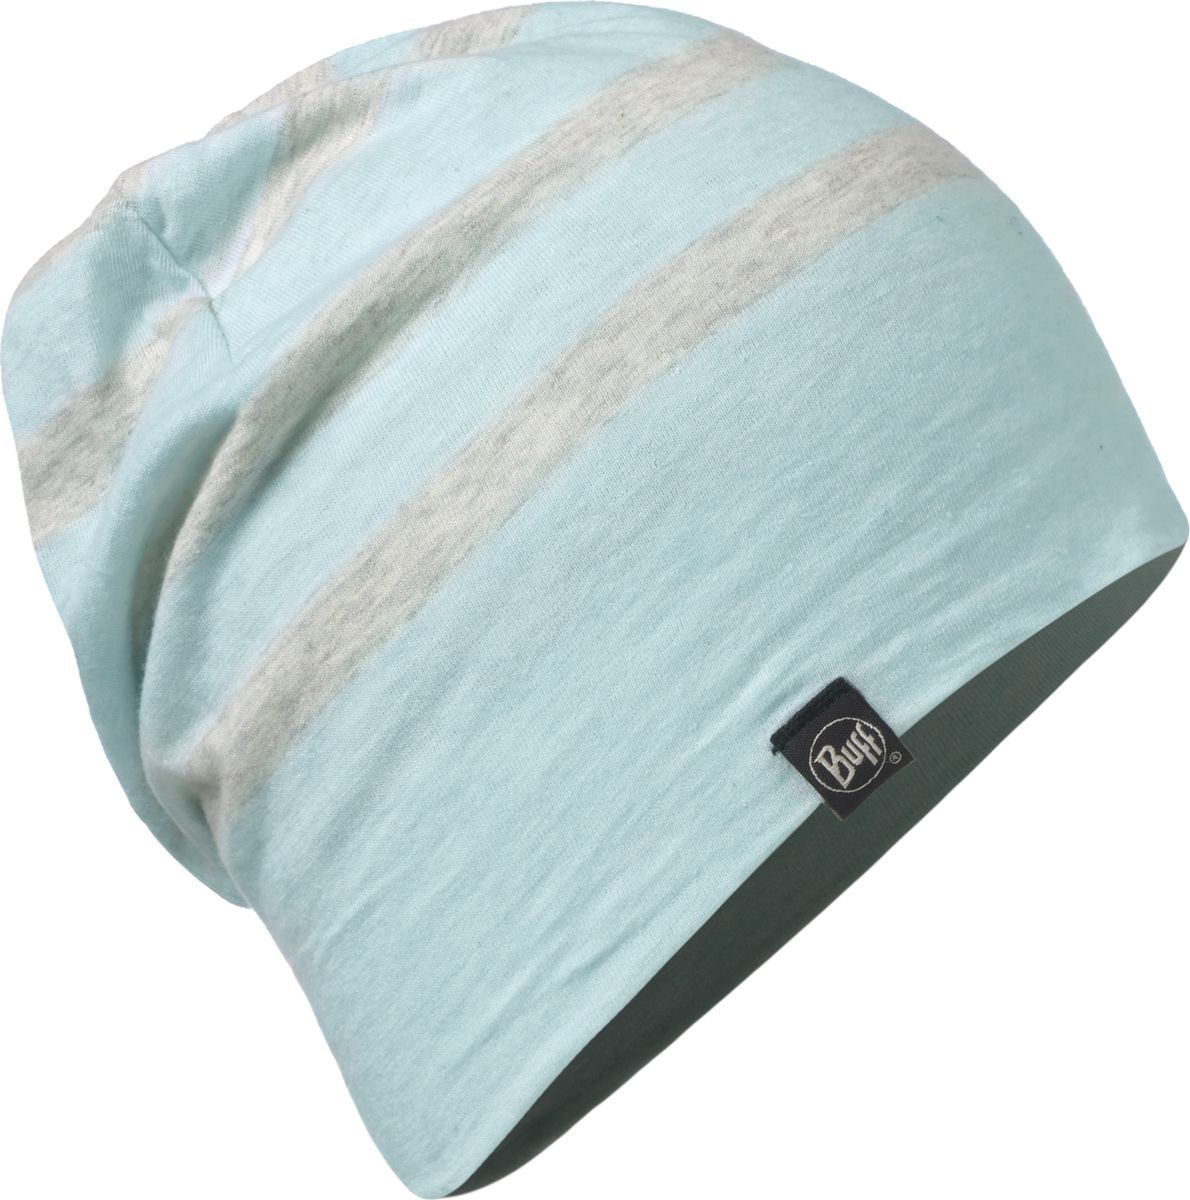 Шапка Buff Cotton Hat Aqua Stripes, цвет: голубой, серый. 117113.711.10.00. Размер 58